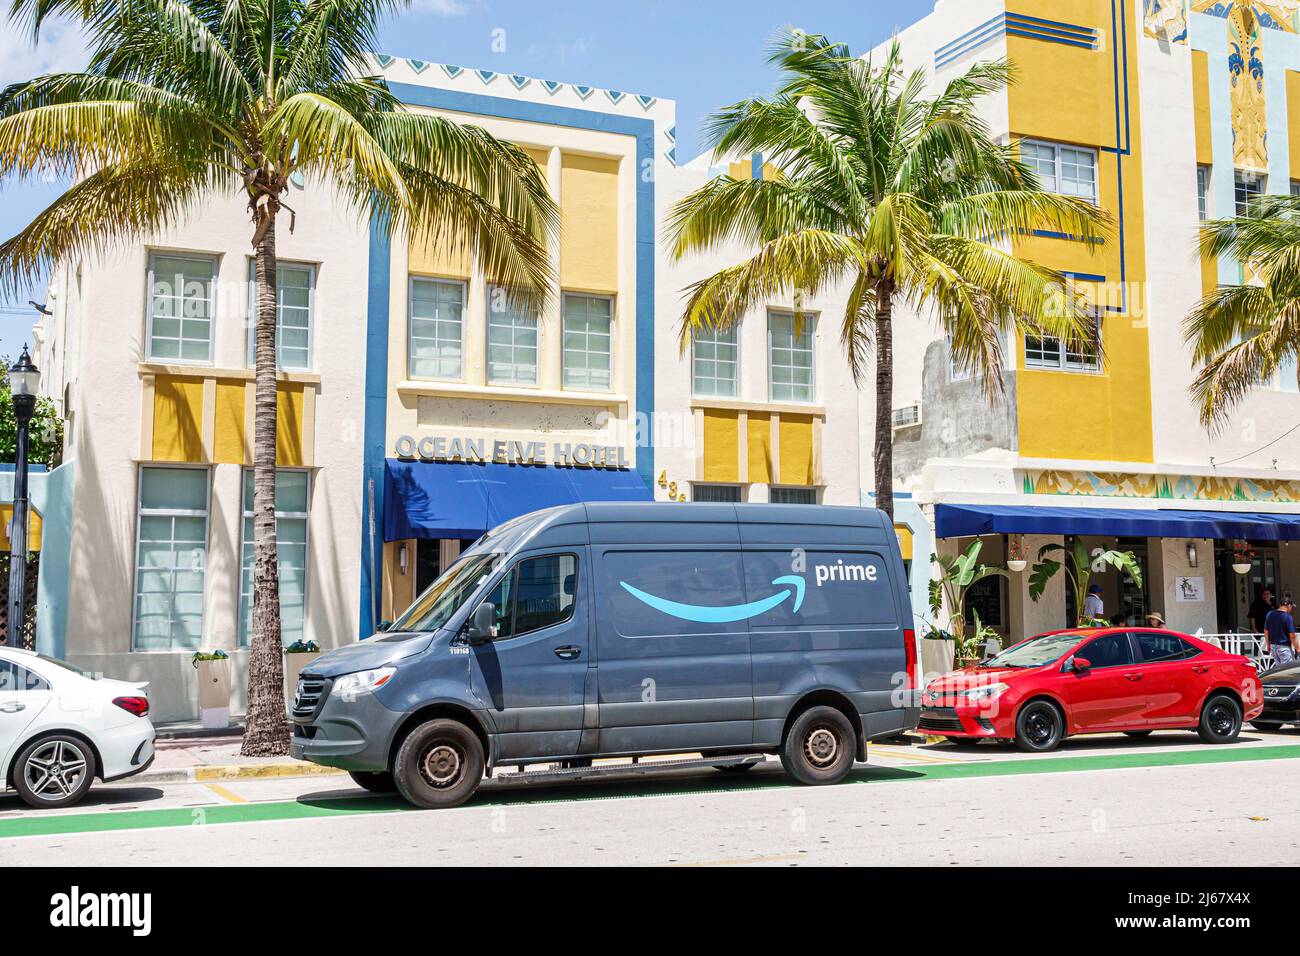 Miami Beach Florida Ocean Drive hôtel Amazon Prime camion de livraison véhicule stationné à l'extérieur Banque D'Images